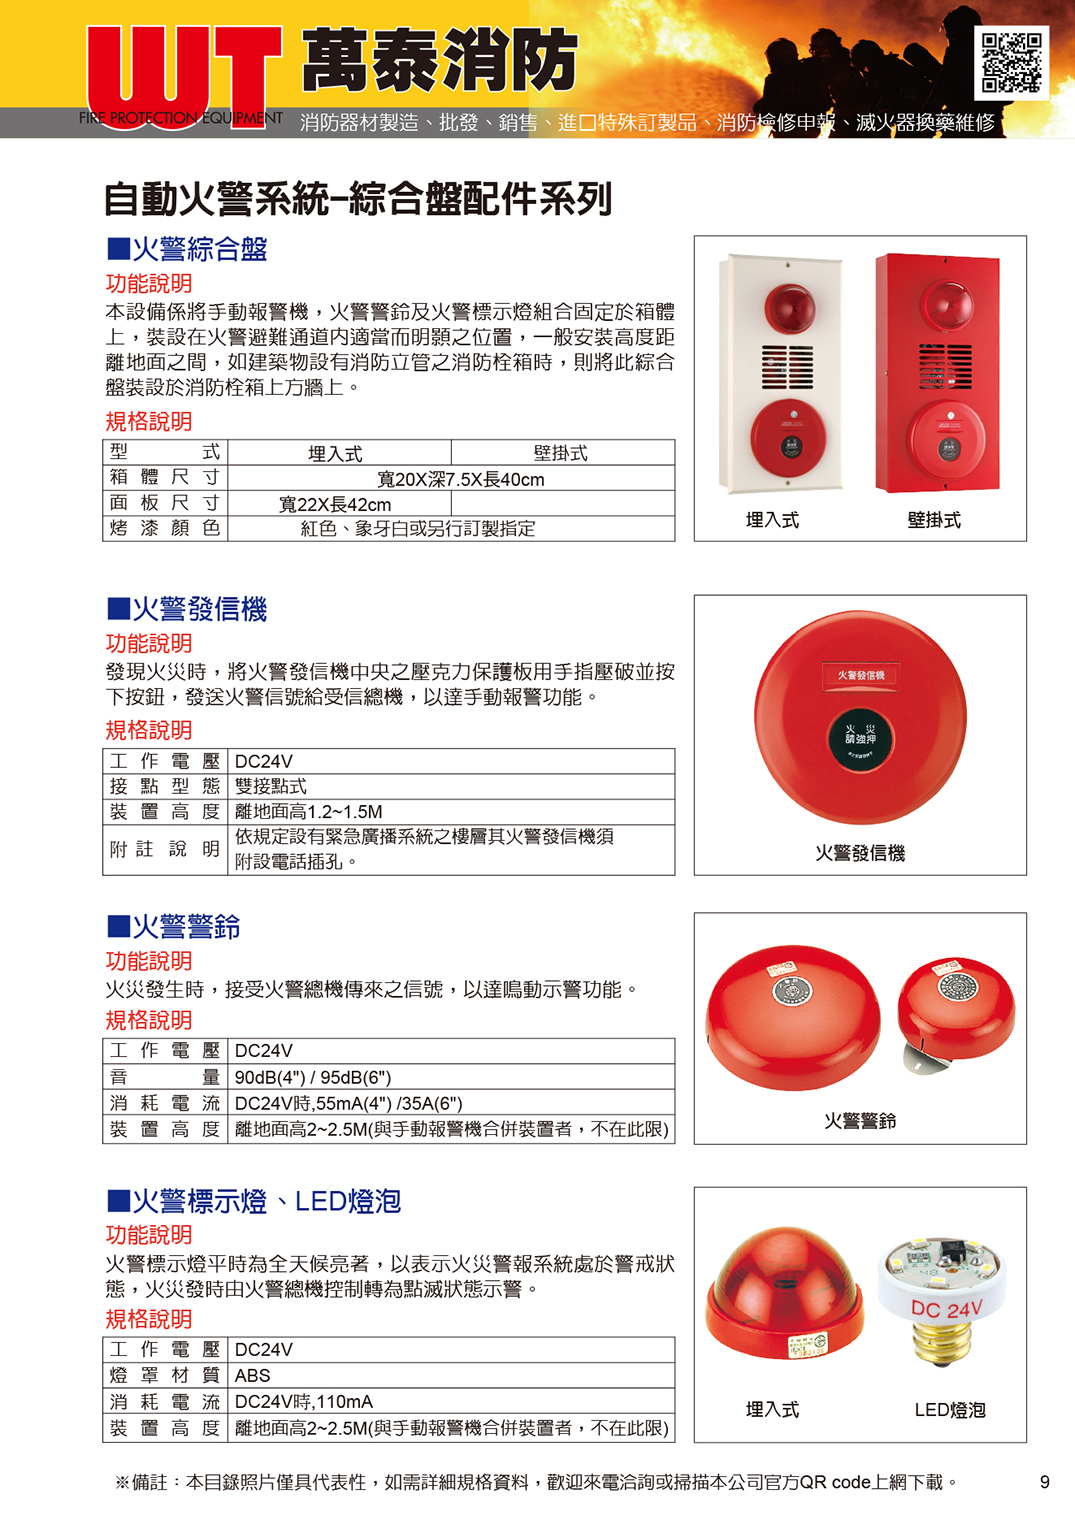 綜合盤 / 火警發信機 / 火警警鈴 / 火警標示燈 / LED燈泡